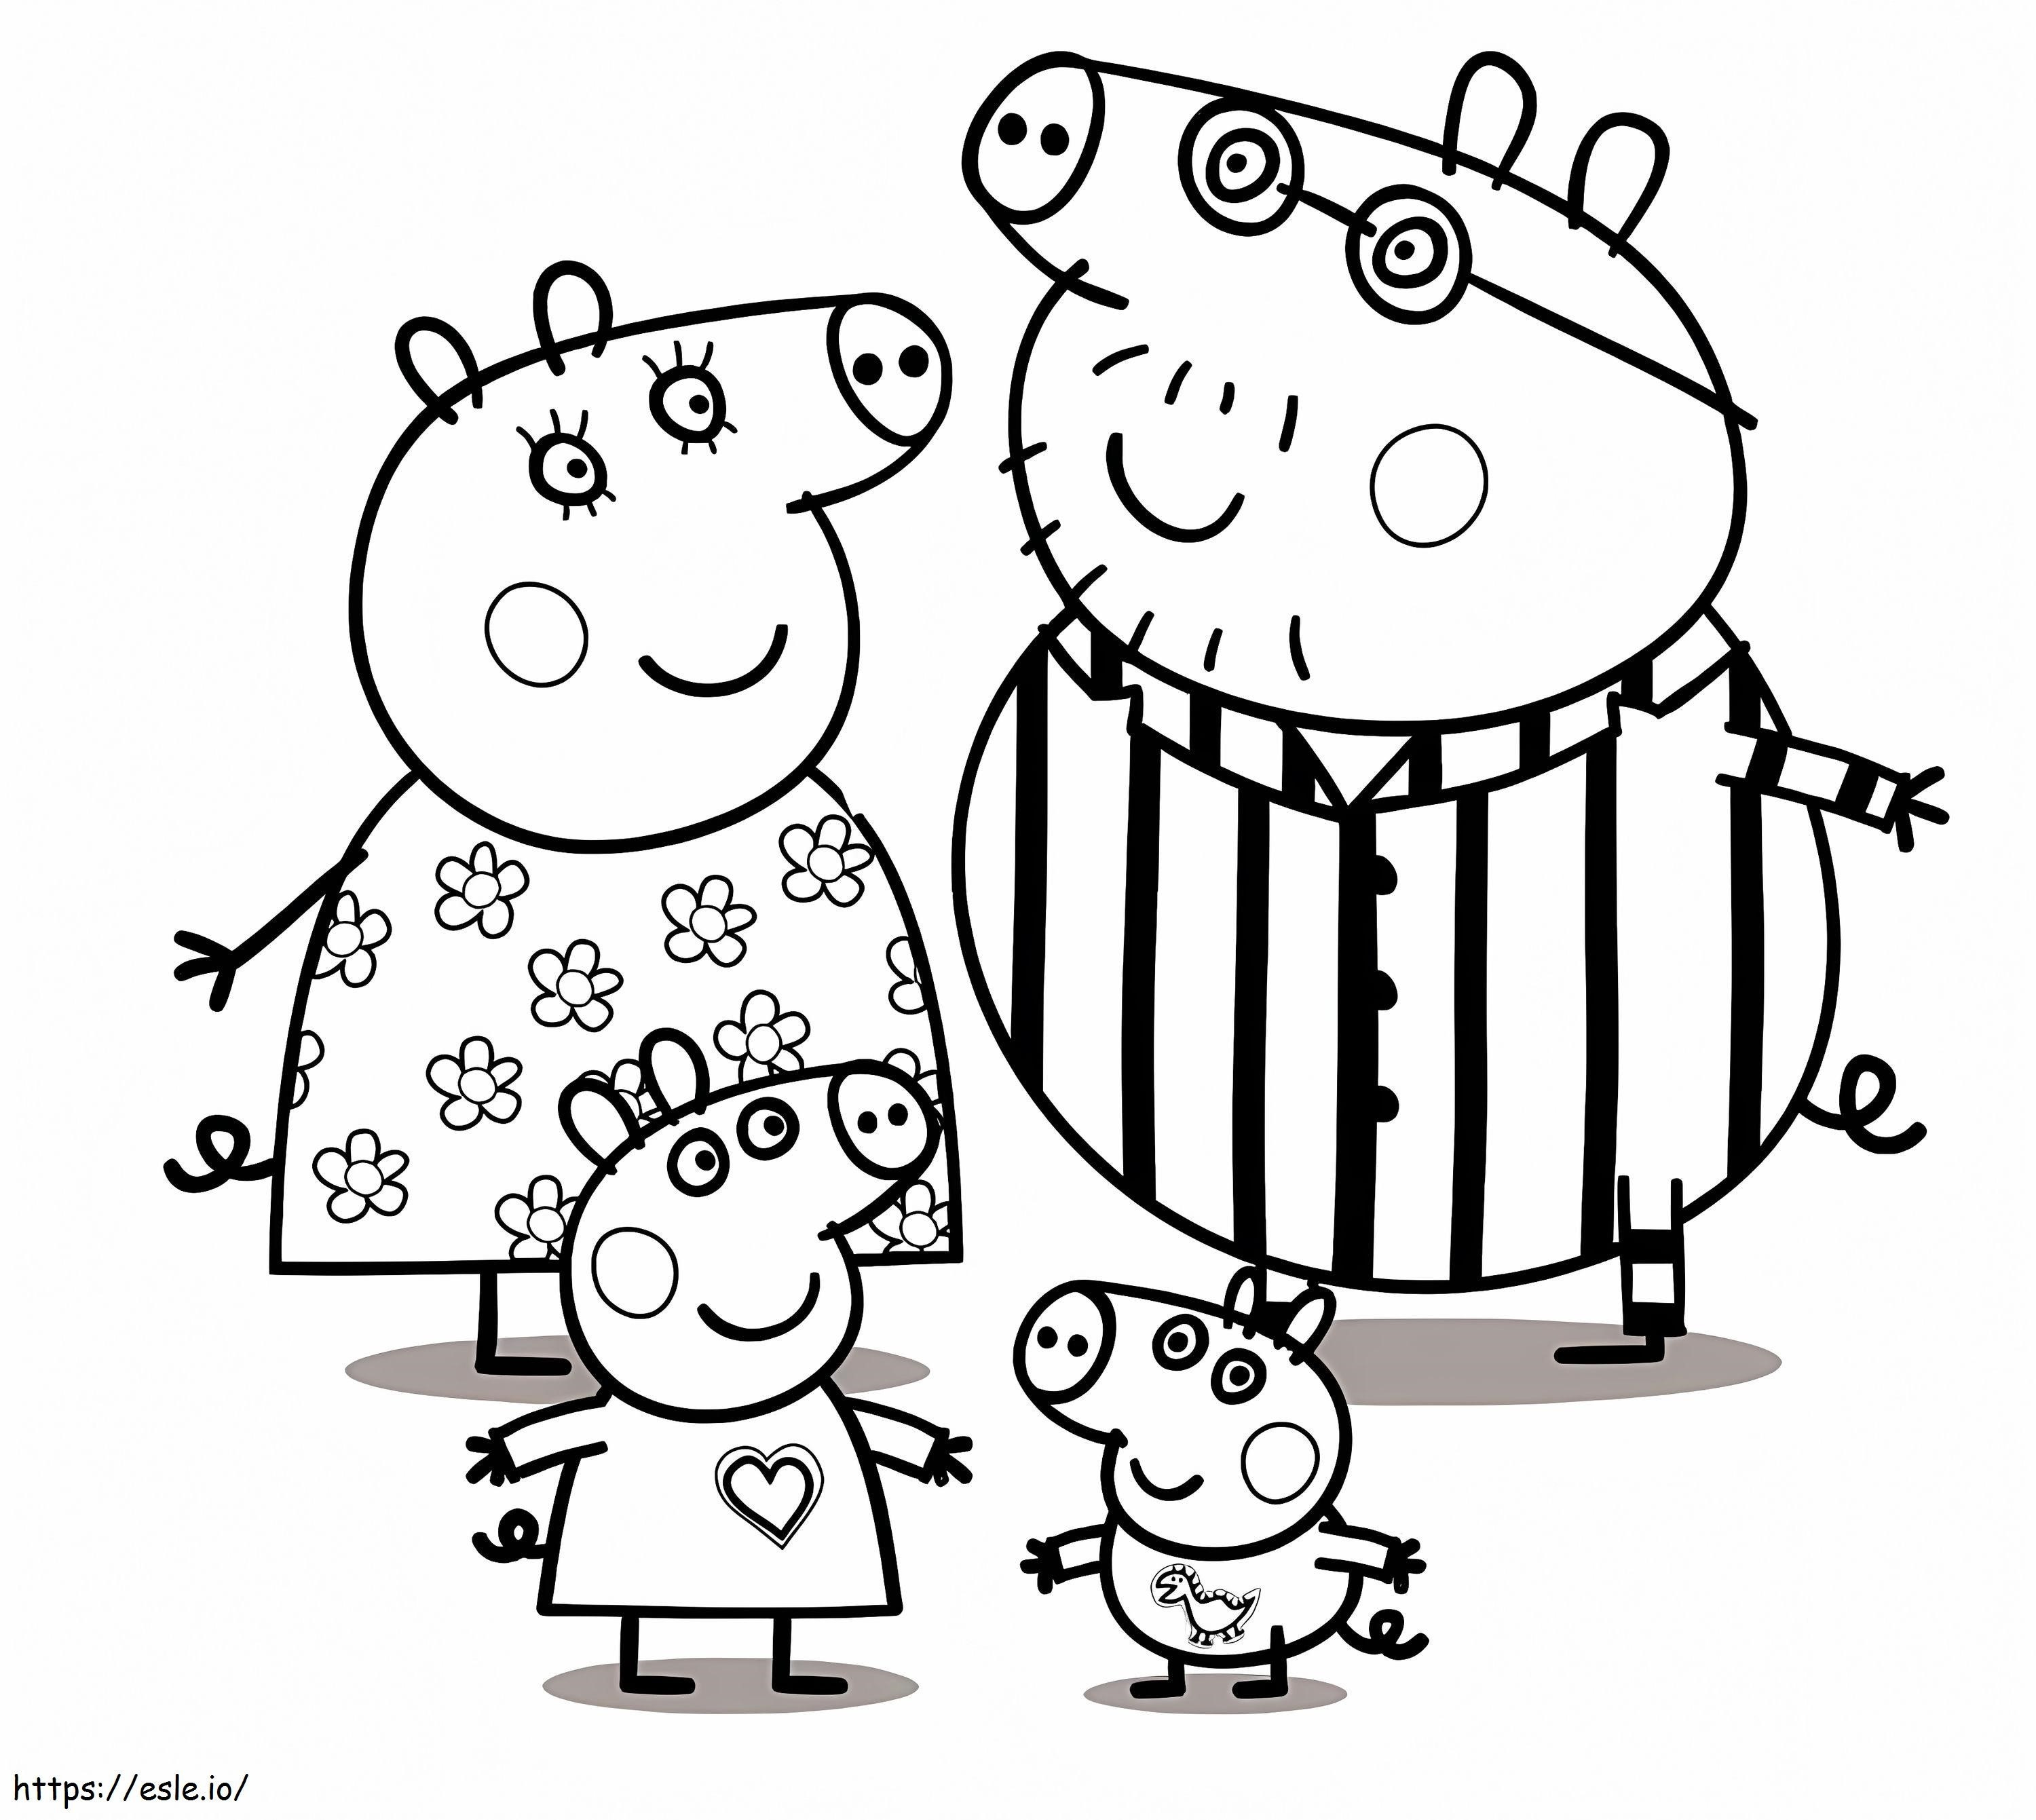 Familia Peppa Pig în pijamale de colorat